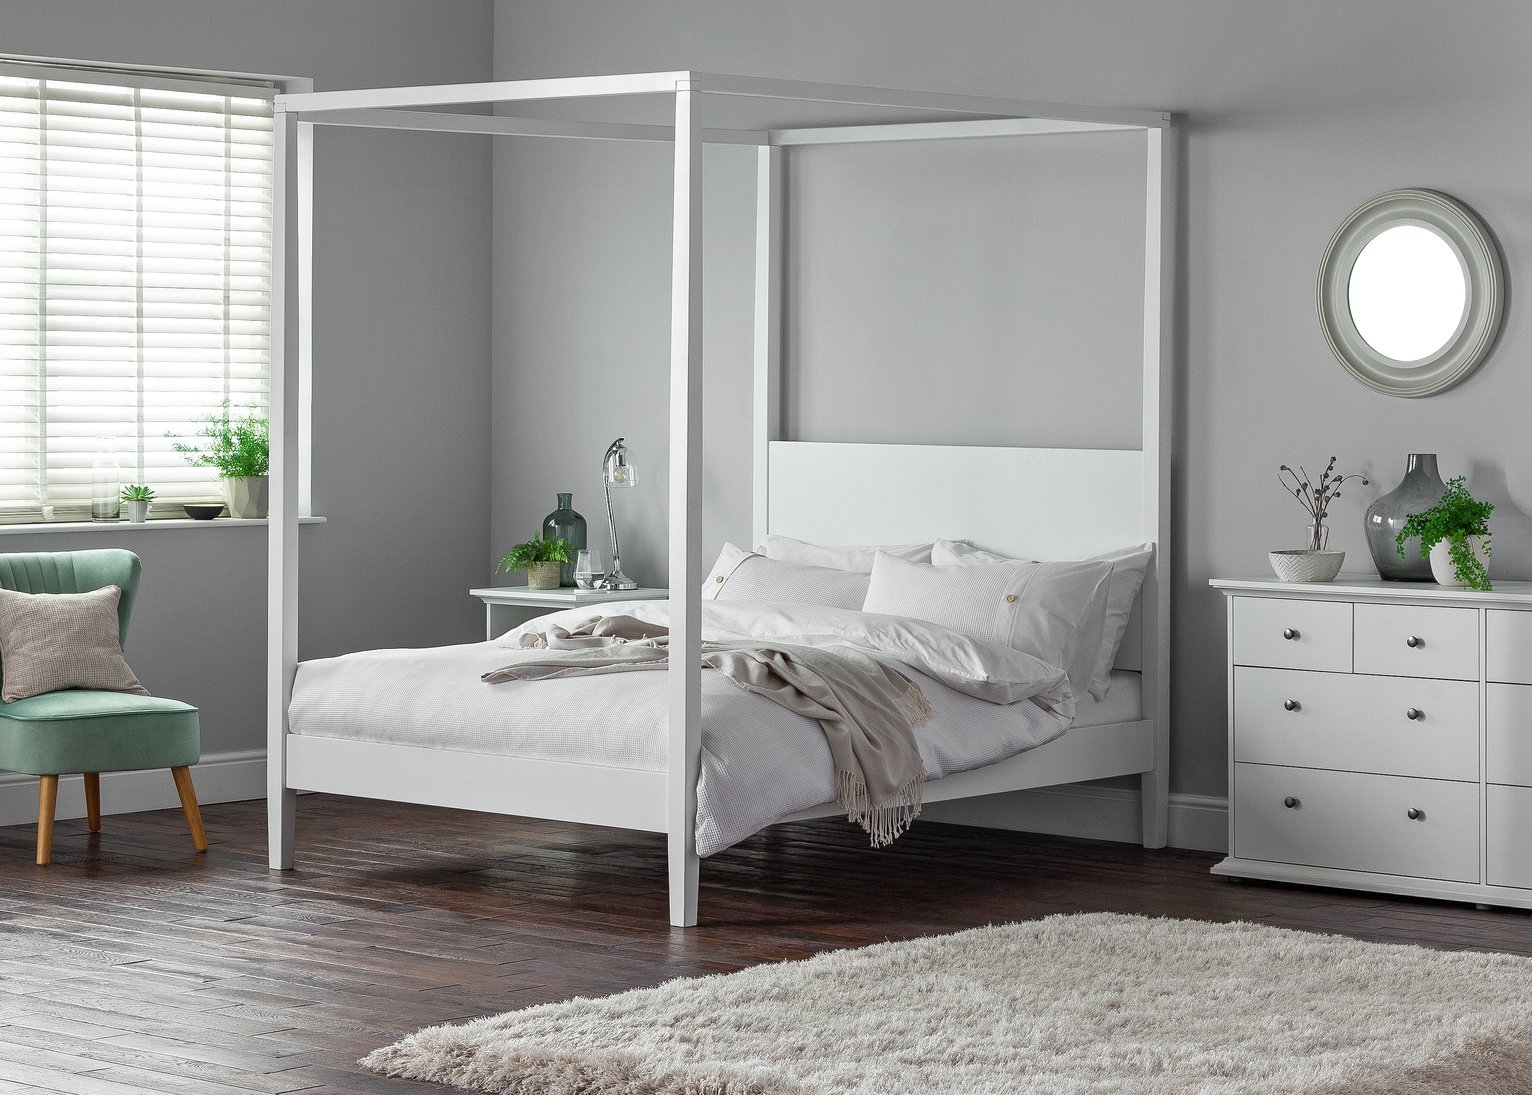 Argos Home Blissford Four Poster Kingsize Bed Frame Review